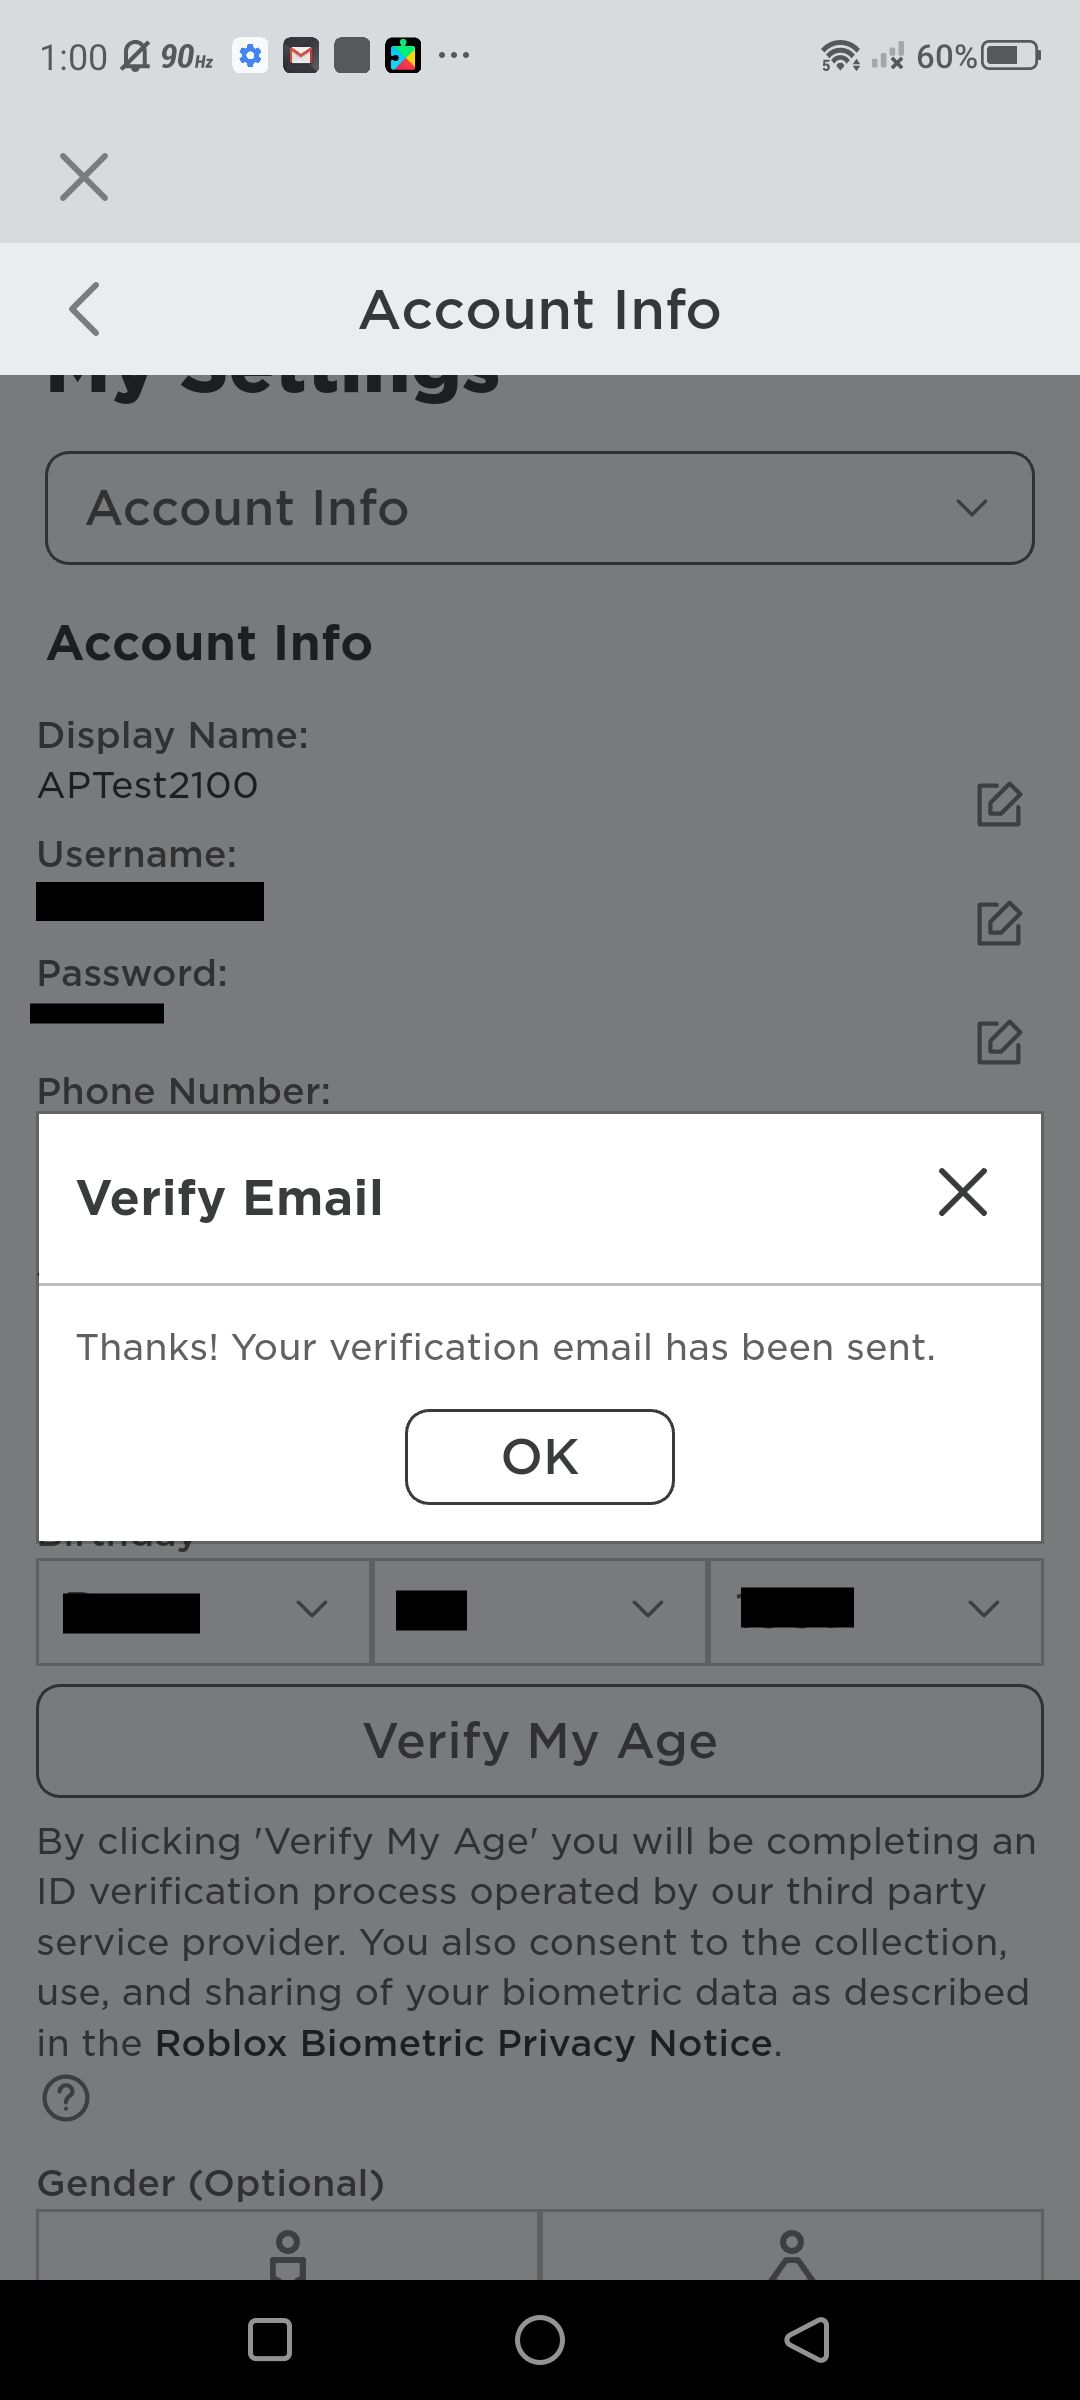 Captura de tela da adição de um e-mail para verificação de uma nova conta Roblox